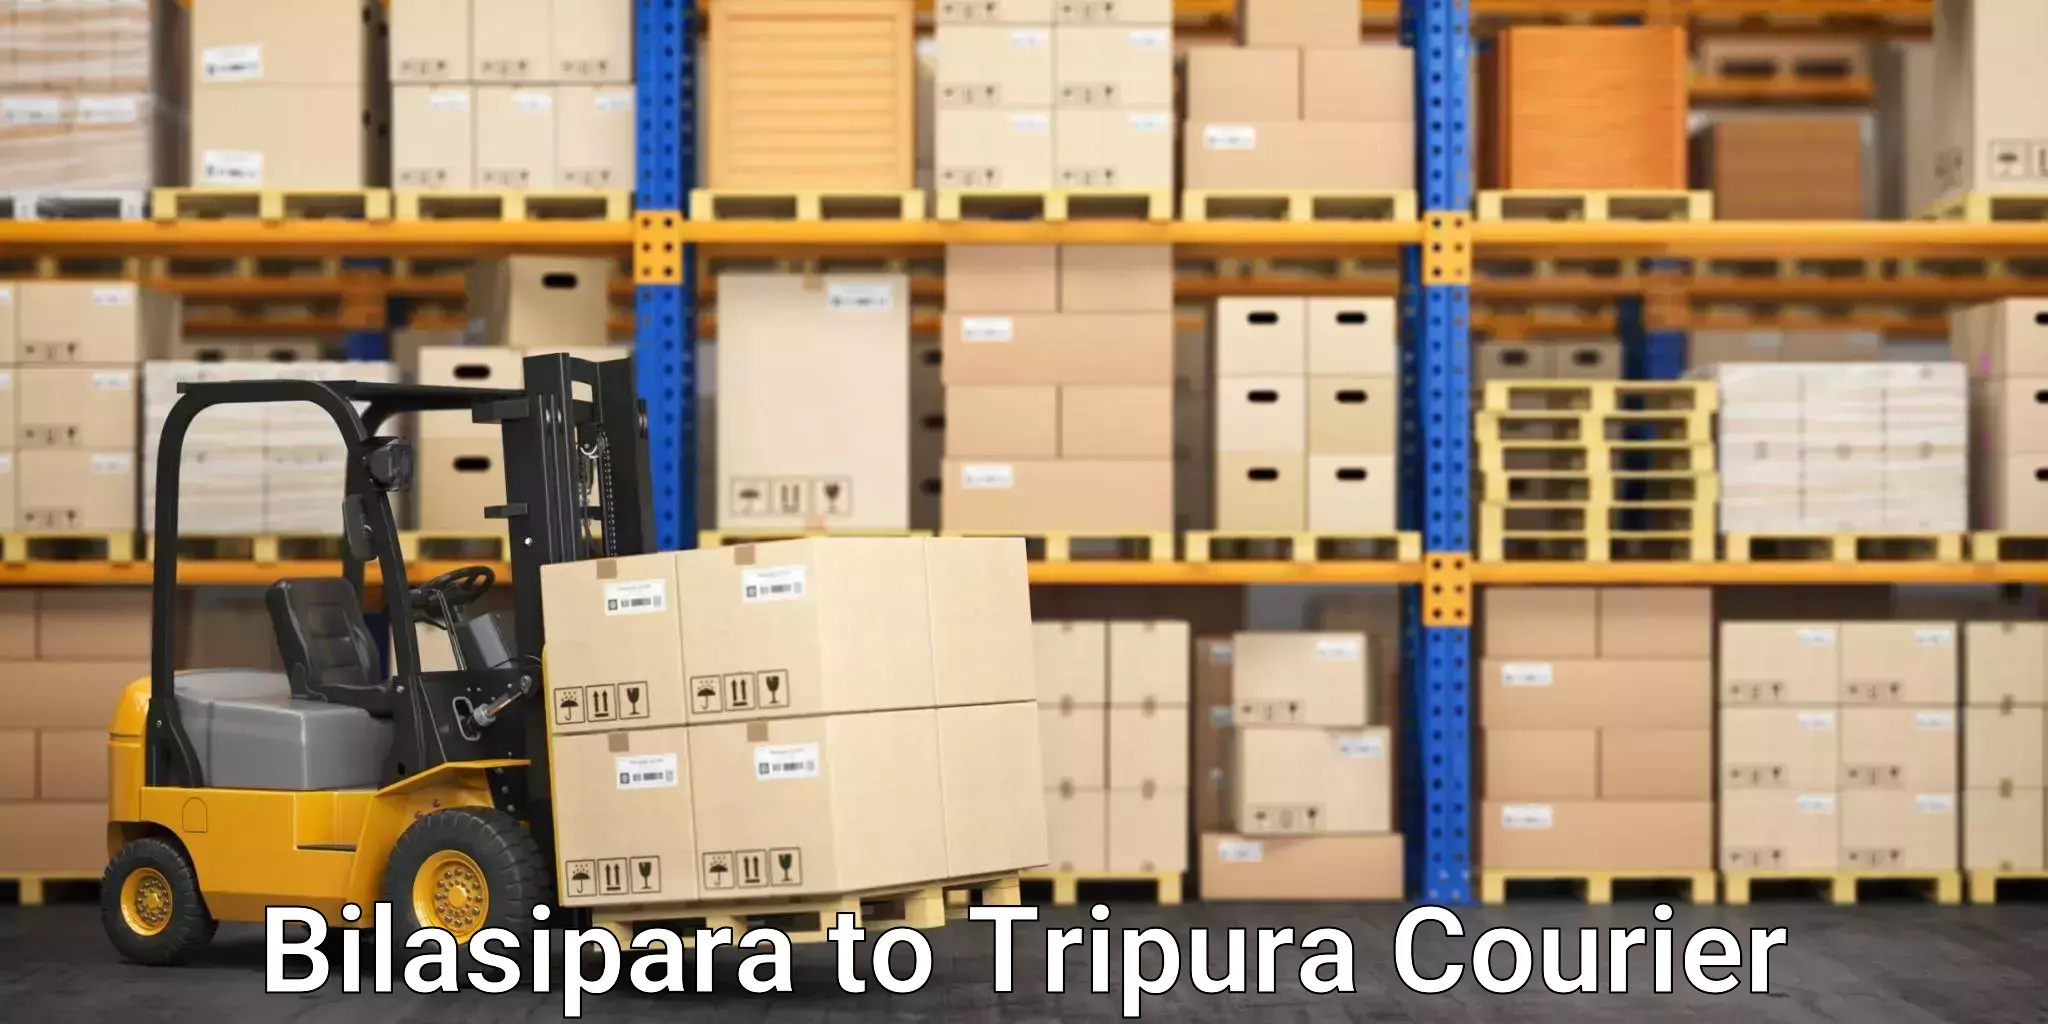 Smart shipping technology in Bilasipara to Agartala